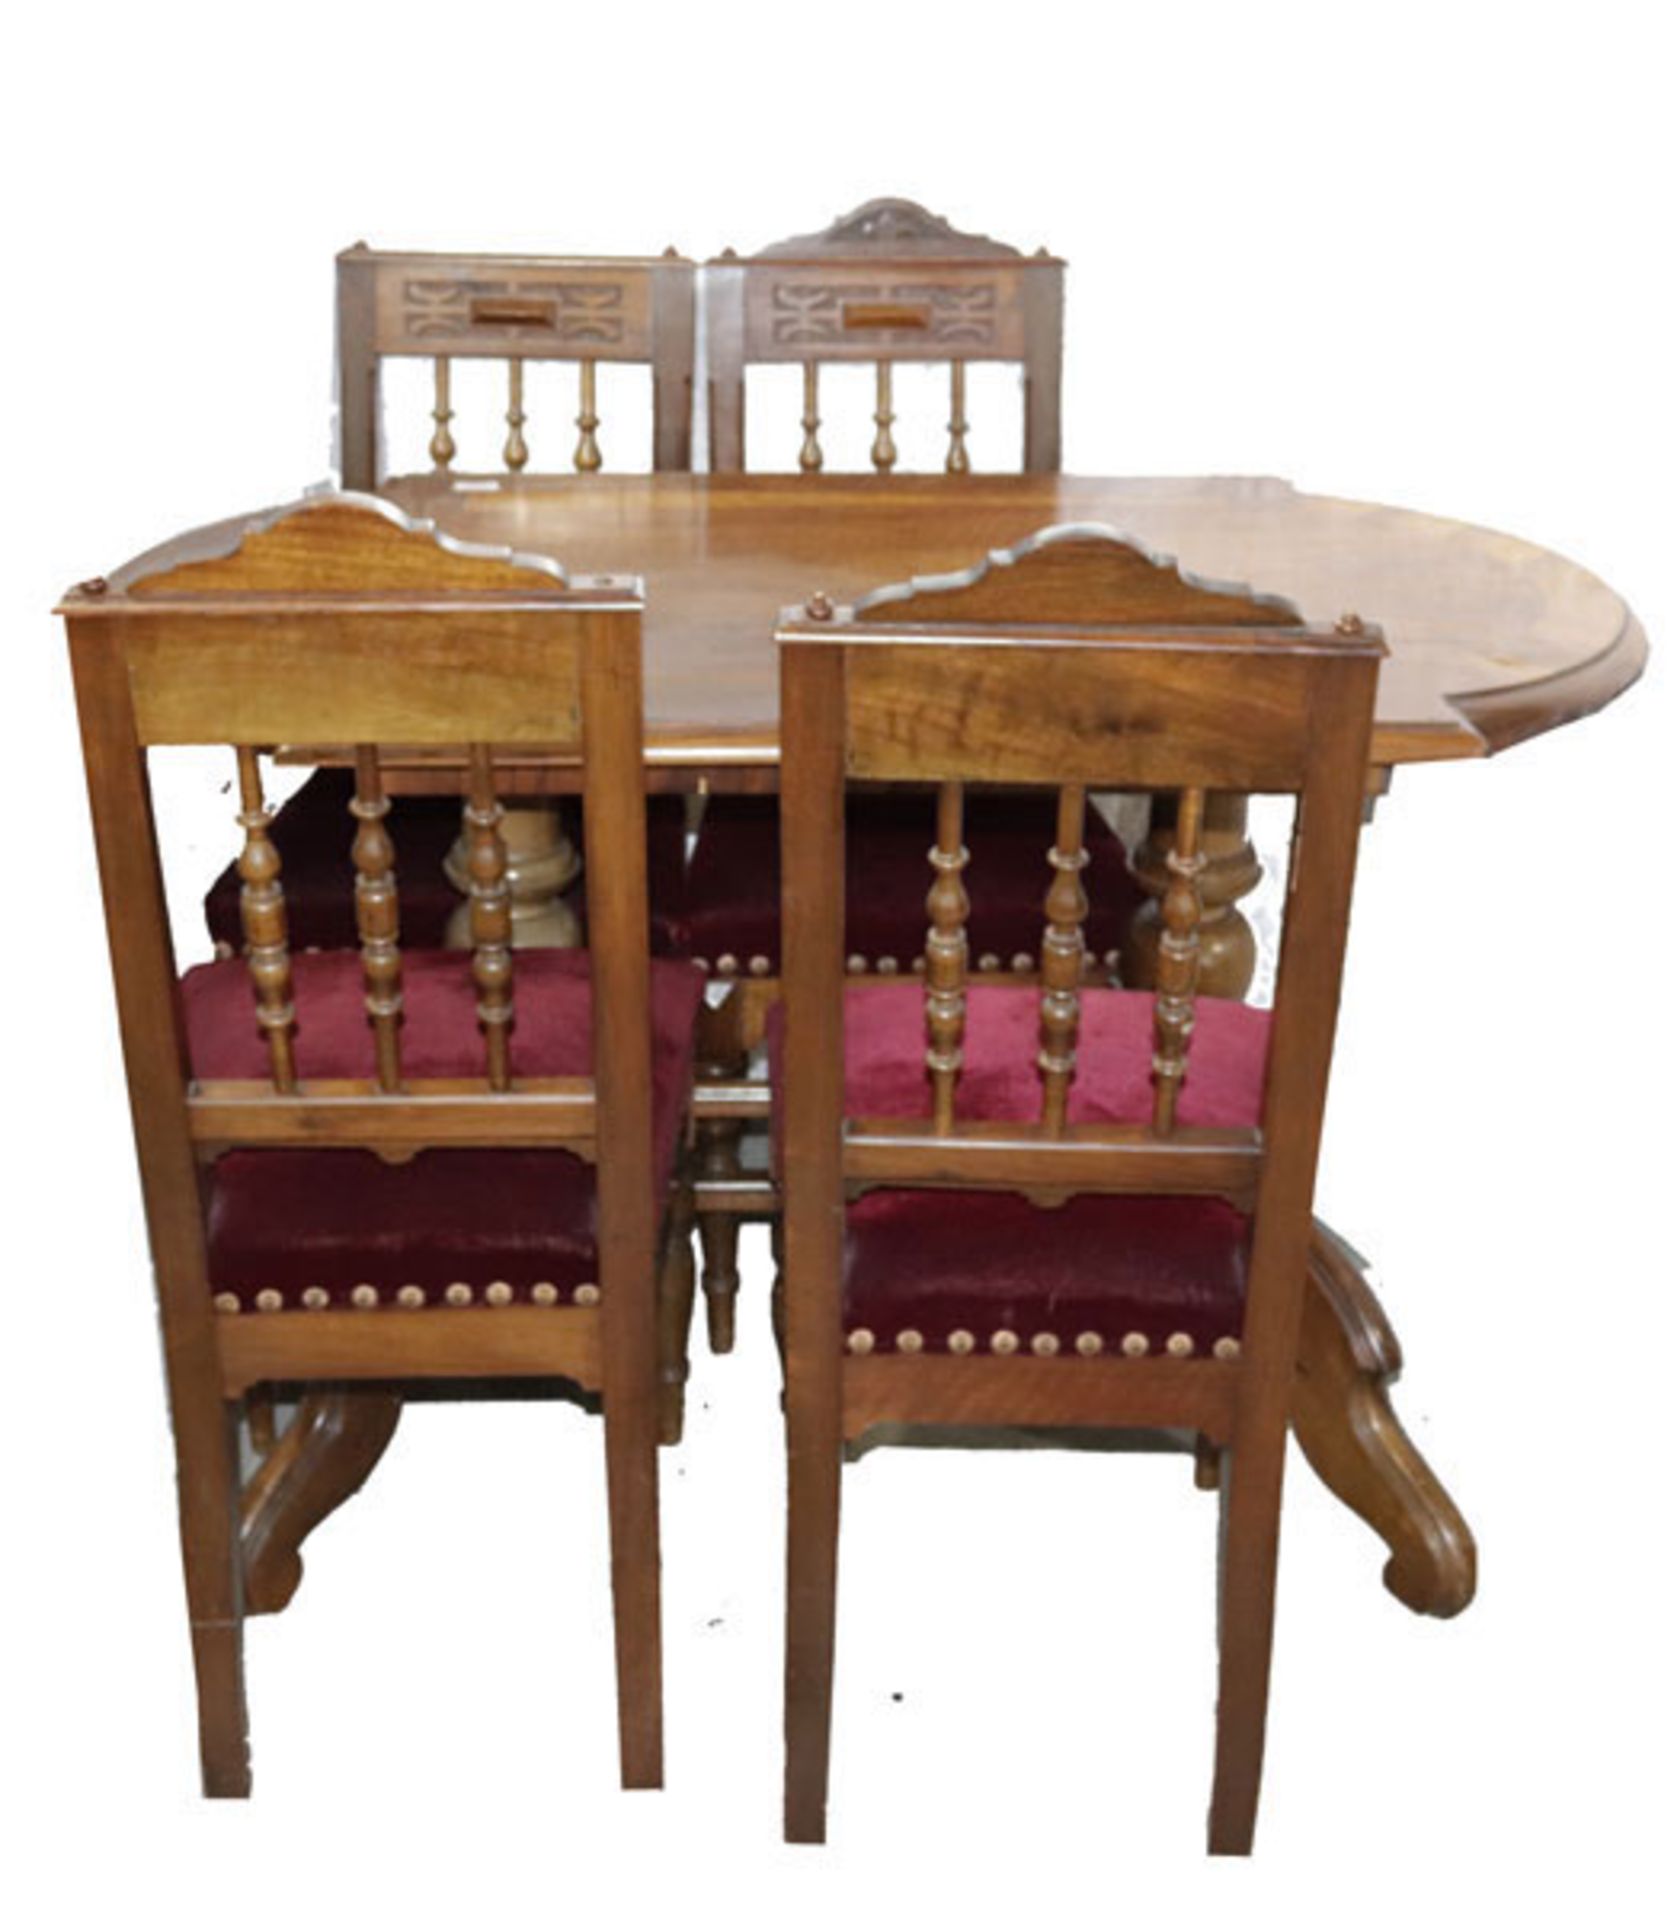 Sitzgarnitur um 1900: Tisch auf gedrechselten Beinen mit 4 Füßen, H 80 cm, B 126 cm, T 69 cm, mit